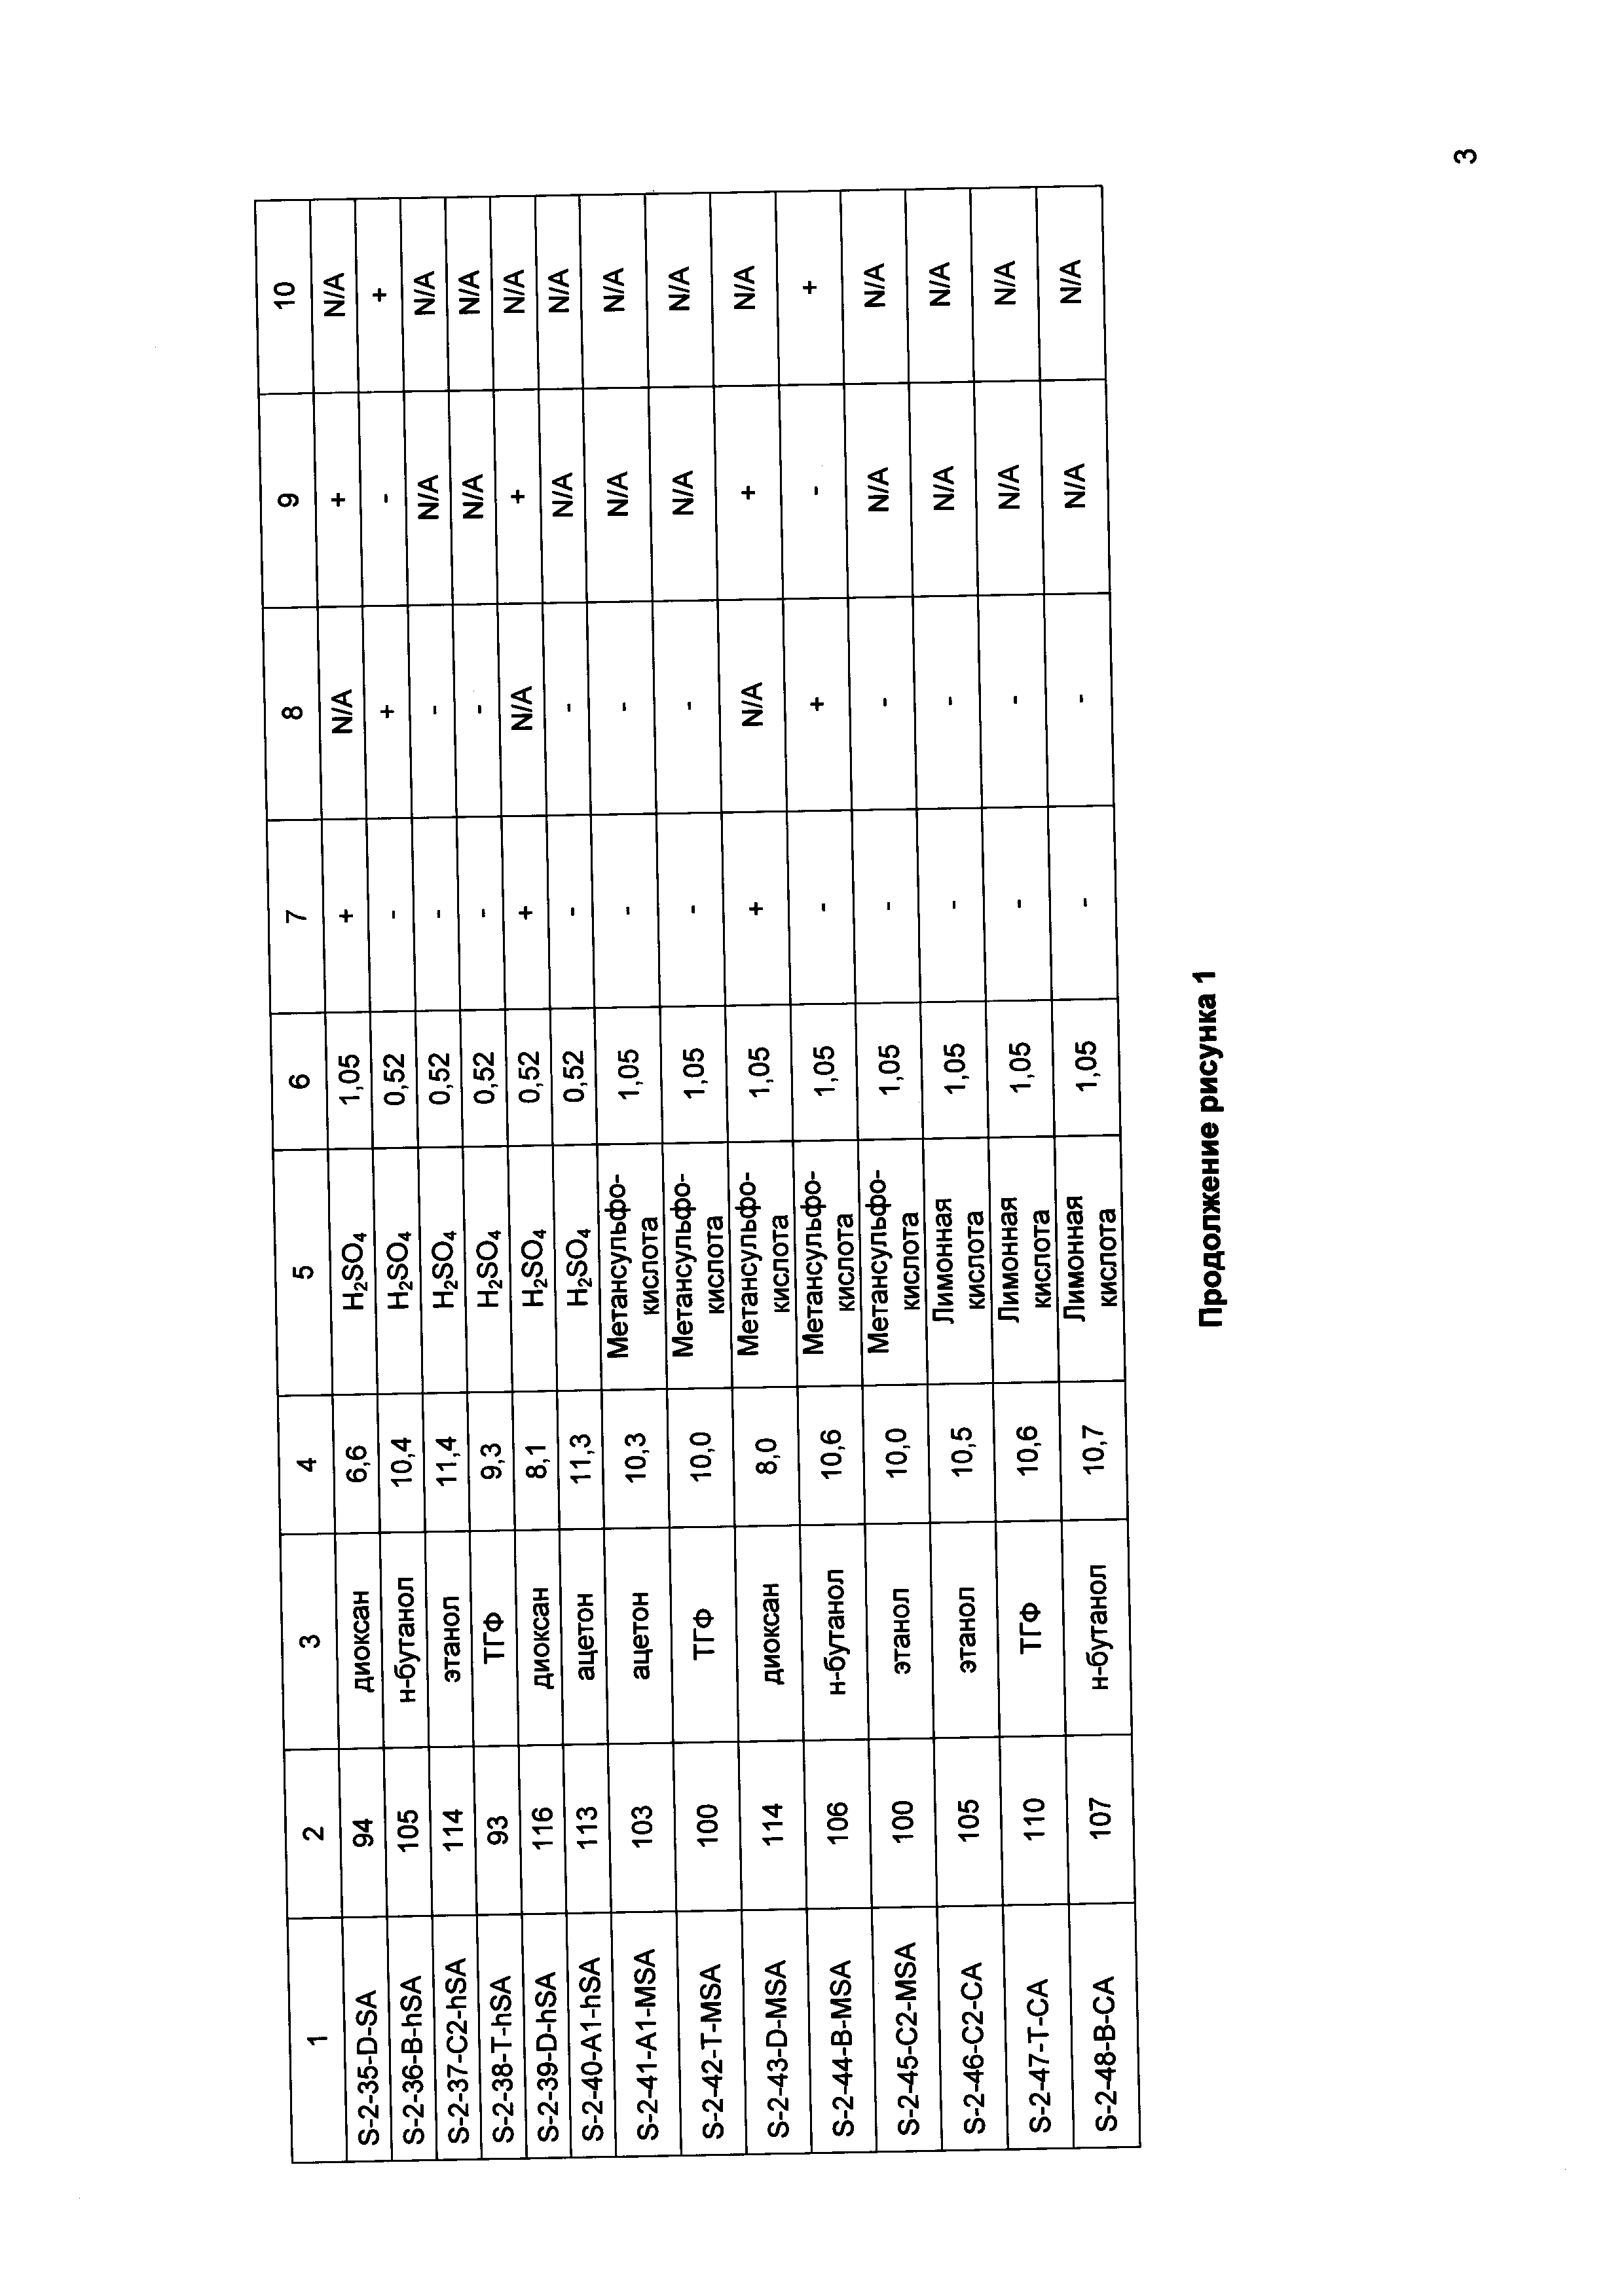 НОВАЯ КРИСТАЛЛИЧЕСКАЯ СОЛЕВАЯ ФОРМА 2,2-ДИМЕТИЛ-6-((4-((3,4,5-ТРИМЕТОКСИФЕНИЛ)АМИНО)-1,3,5-ТРИАЗИН-2-ИЛ)АМИНО)-2Н-ПИРИДО[3,2-В][1,4]ОКСАЗИН-3(4Н)-ОНА ДЛЯ МЕДИЦИНСКОГО ПРИМЕНЕНИЯ